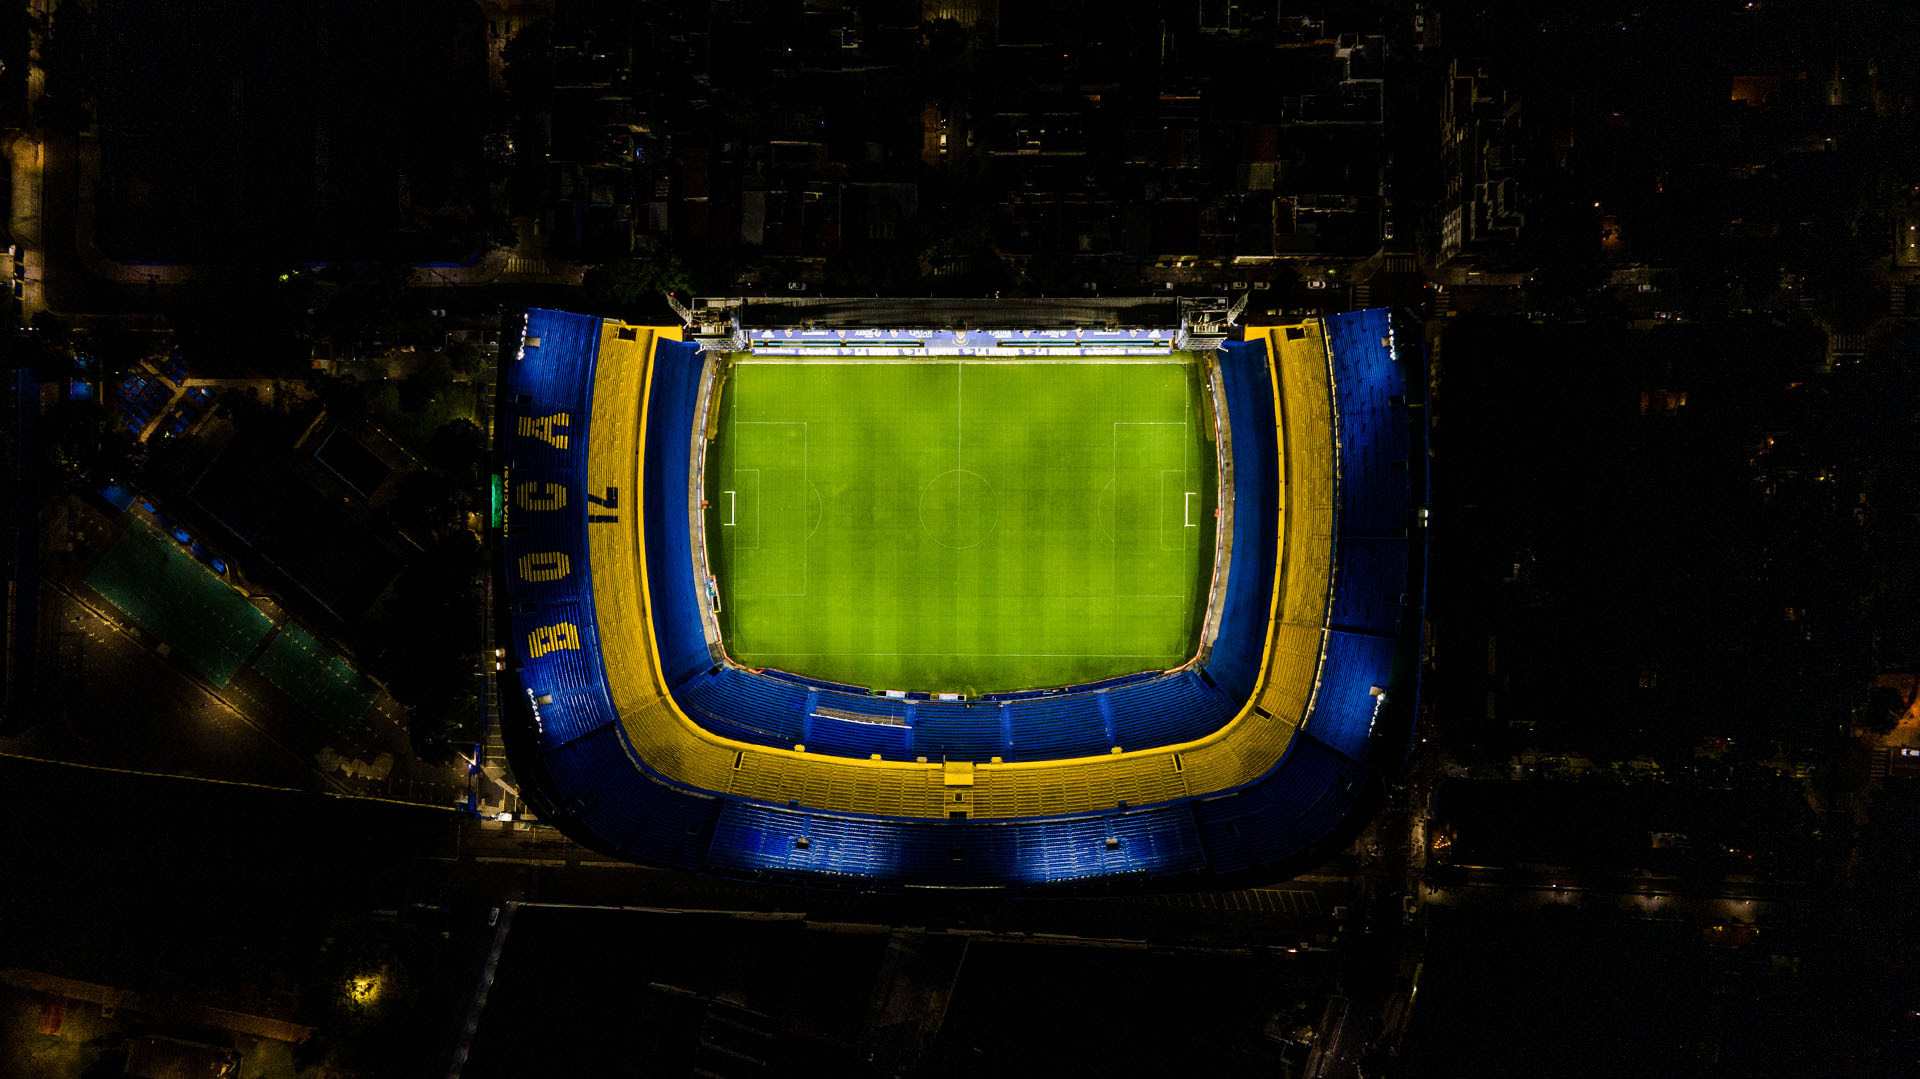 La tribuna en observación venía siendo monitoreada por el club (Photo by Tomas Cuesta/Getty Images)